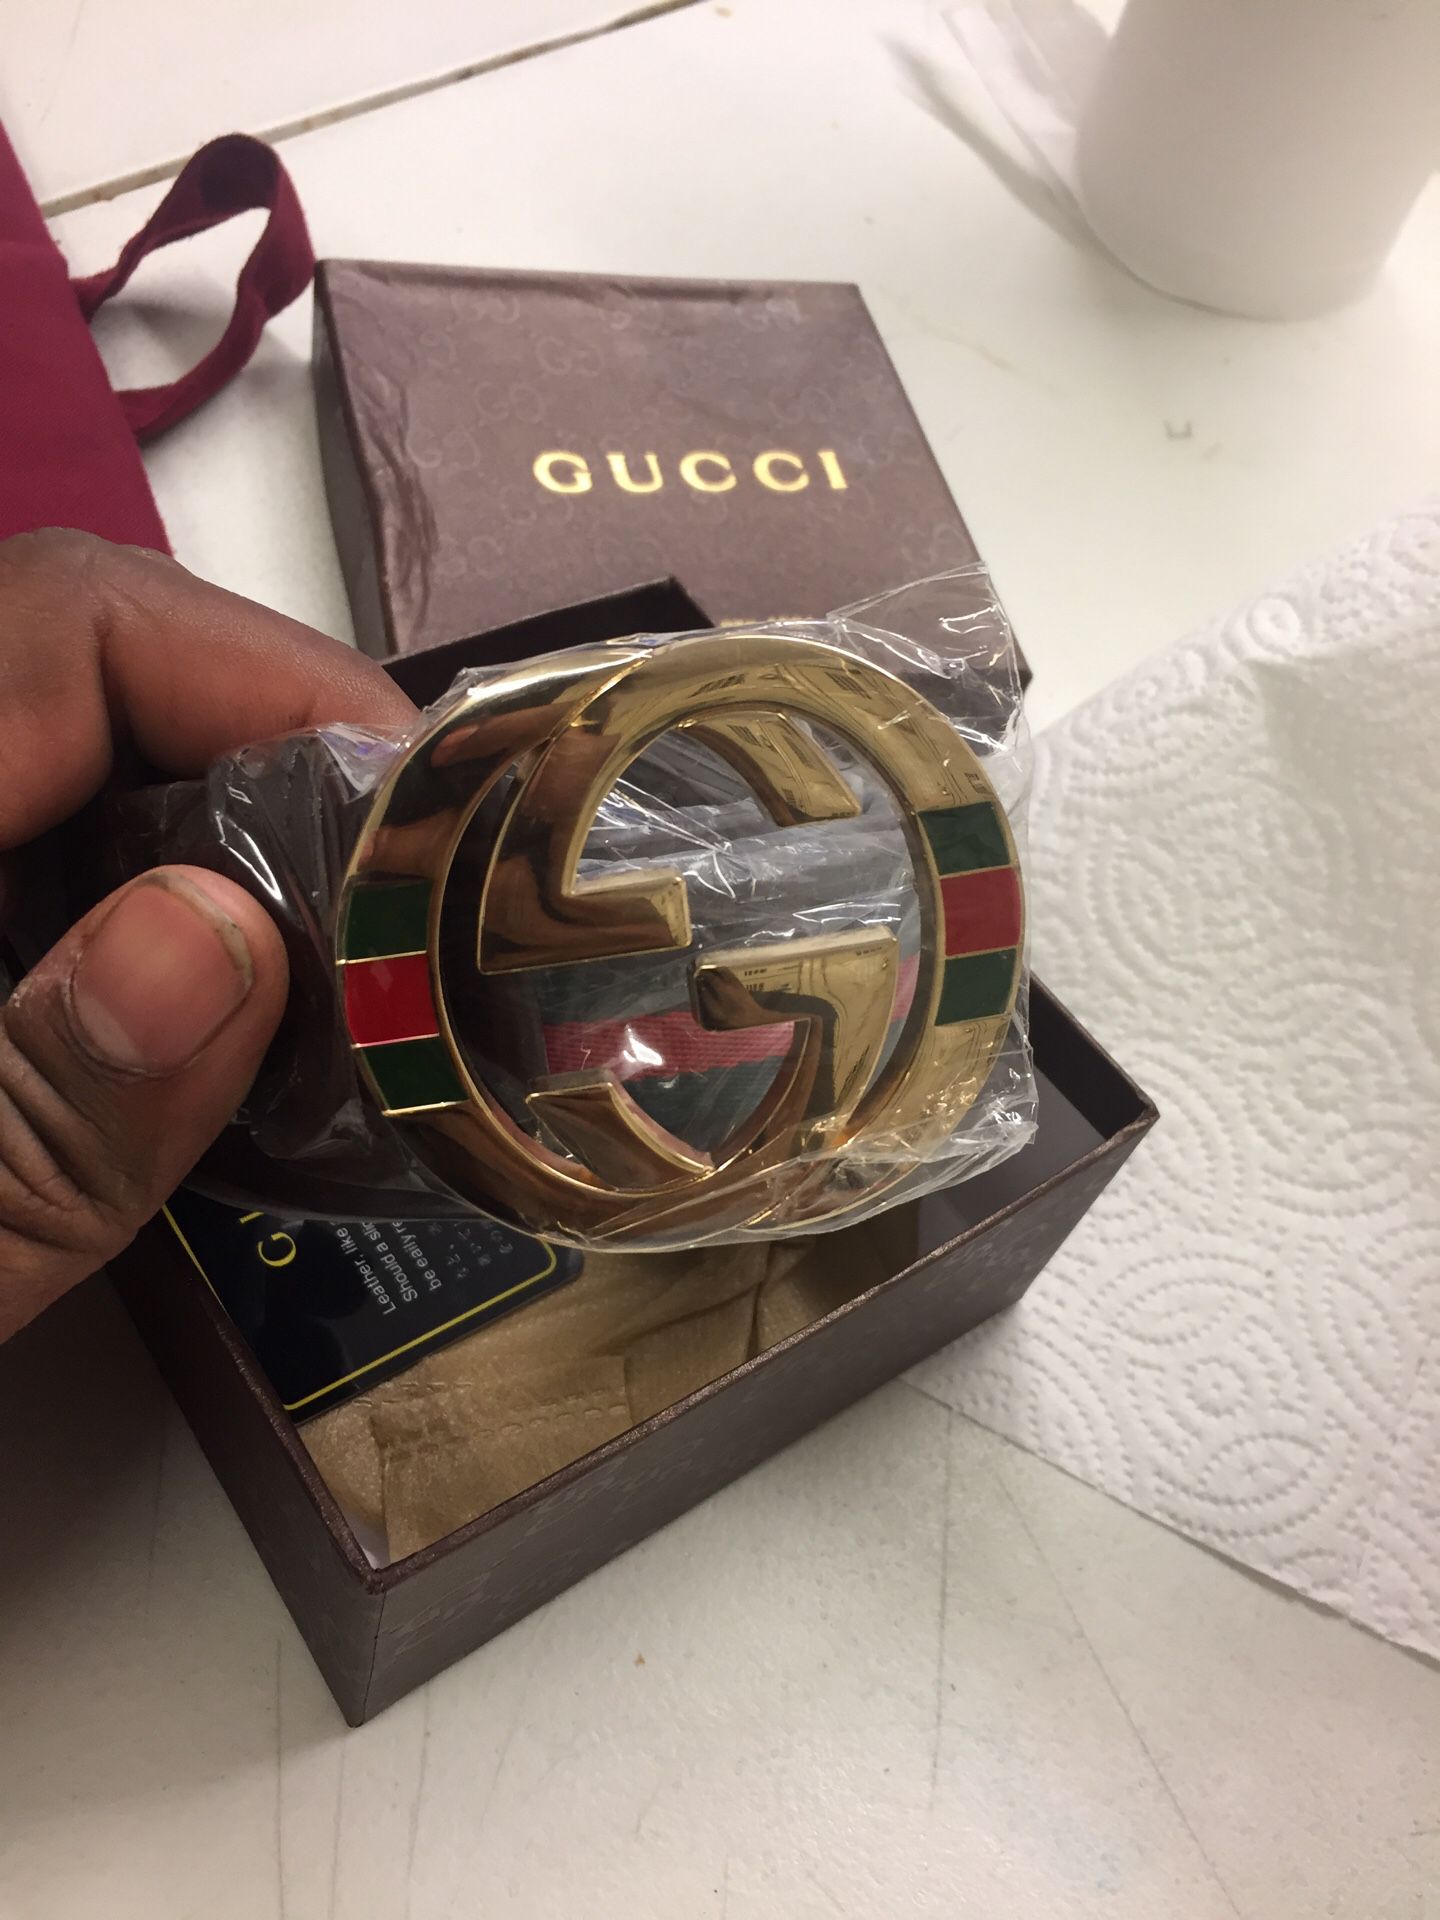 Gucci belt 120$